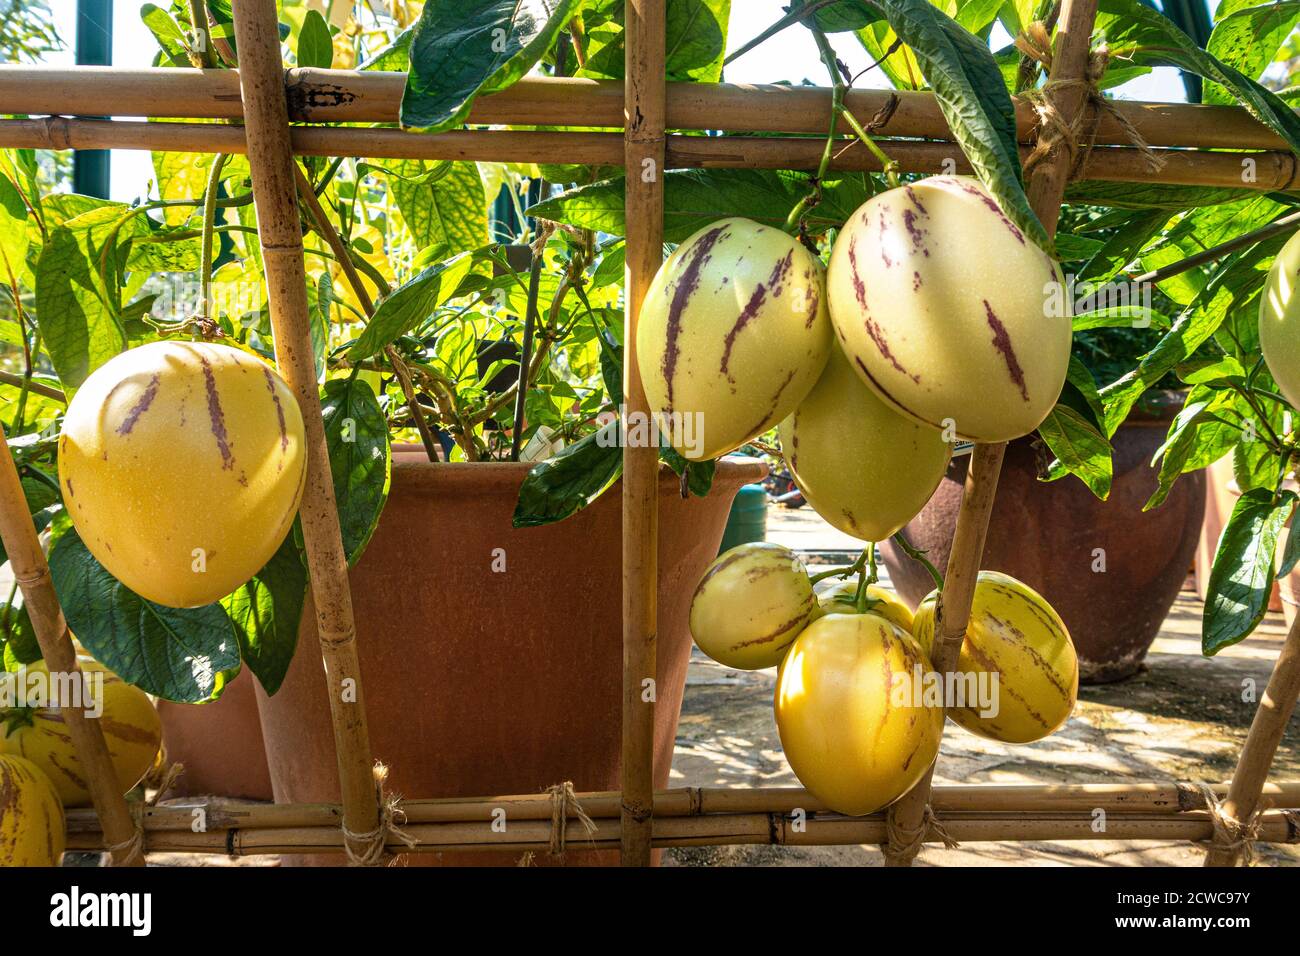 Pepino melons 'Solanum muricatum' espèce de fruits à feuilles persistantes originaire d'Amérique du Sud, cultivée pour ses fruits comestibles sucrés. Connu sous le nom de pepino dulce Banque D'Images